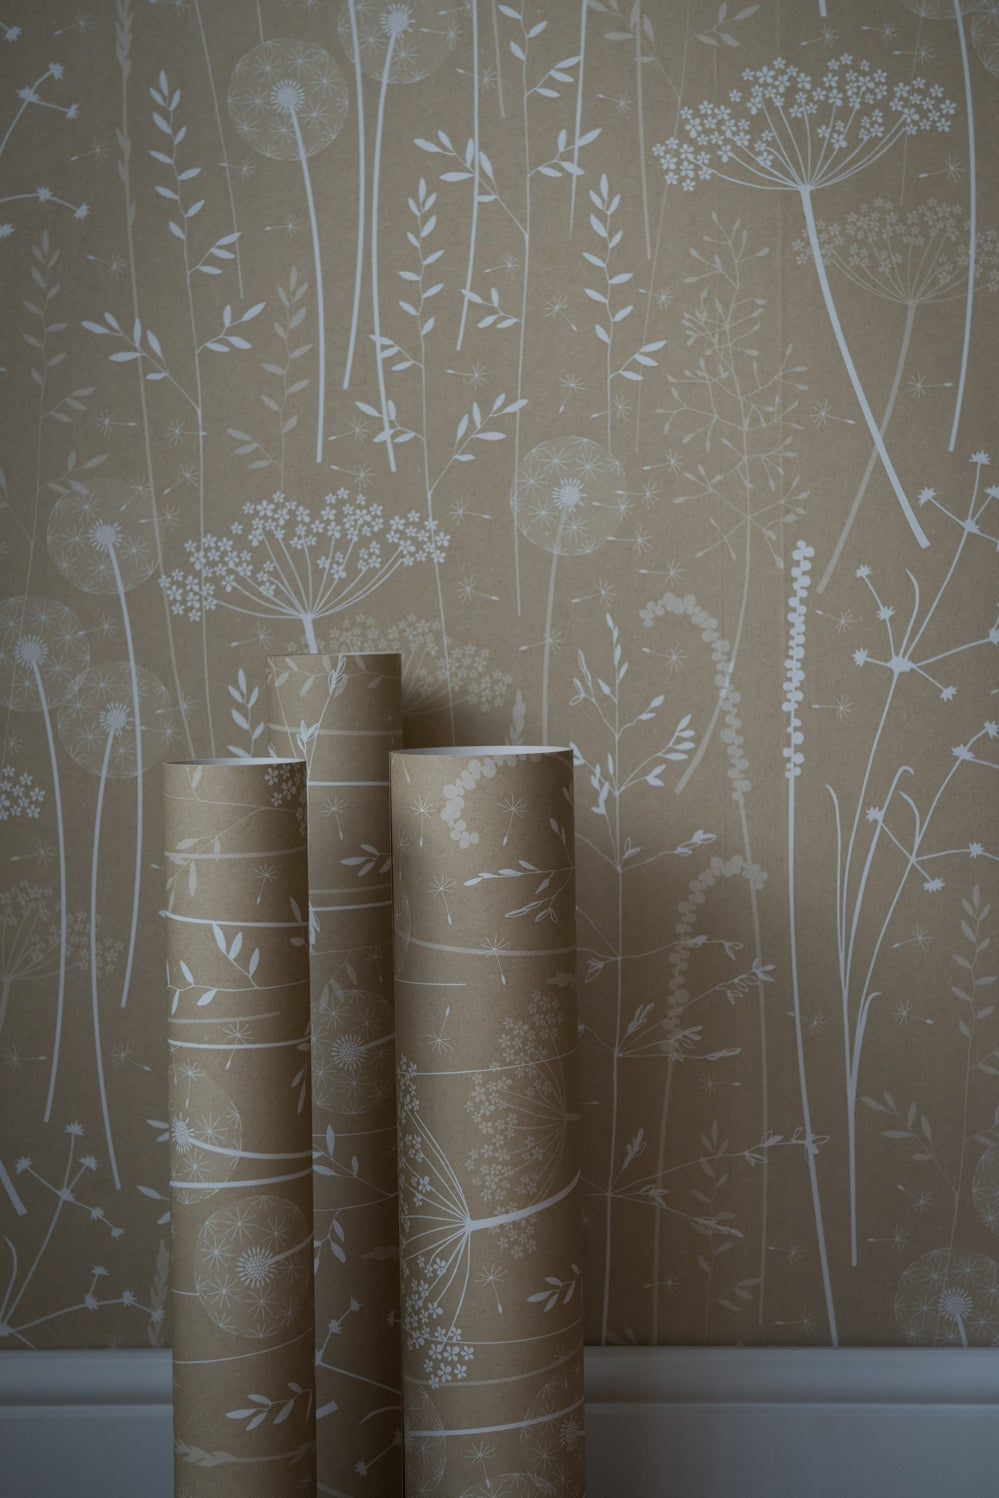 Paper Meadow Wallpaper in Kraft